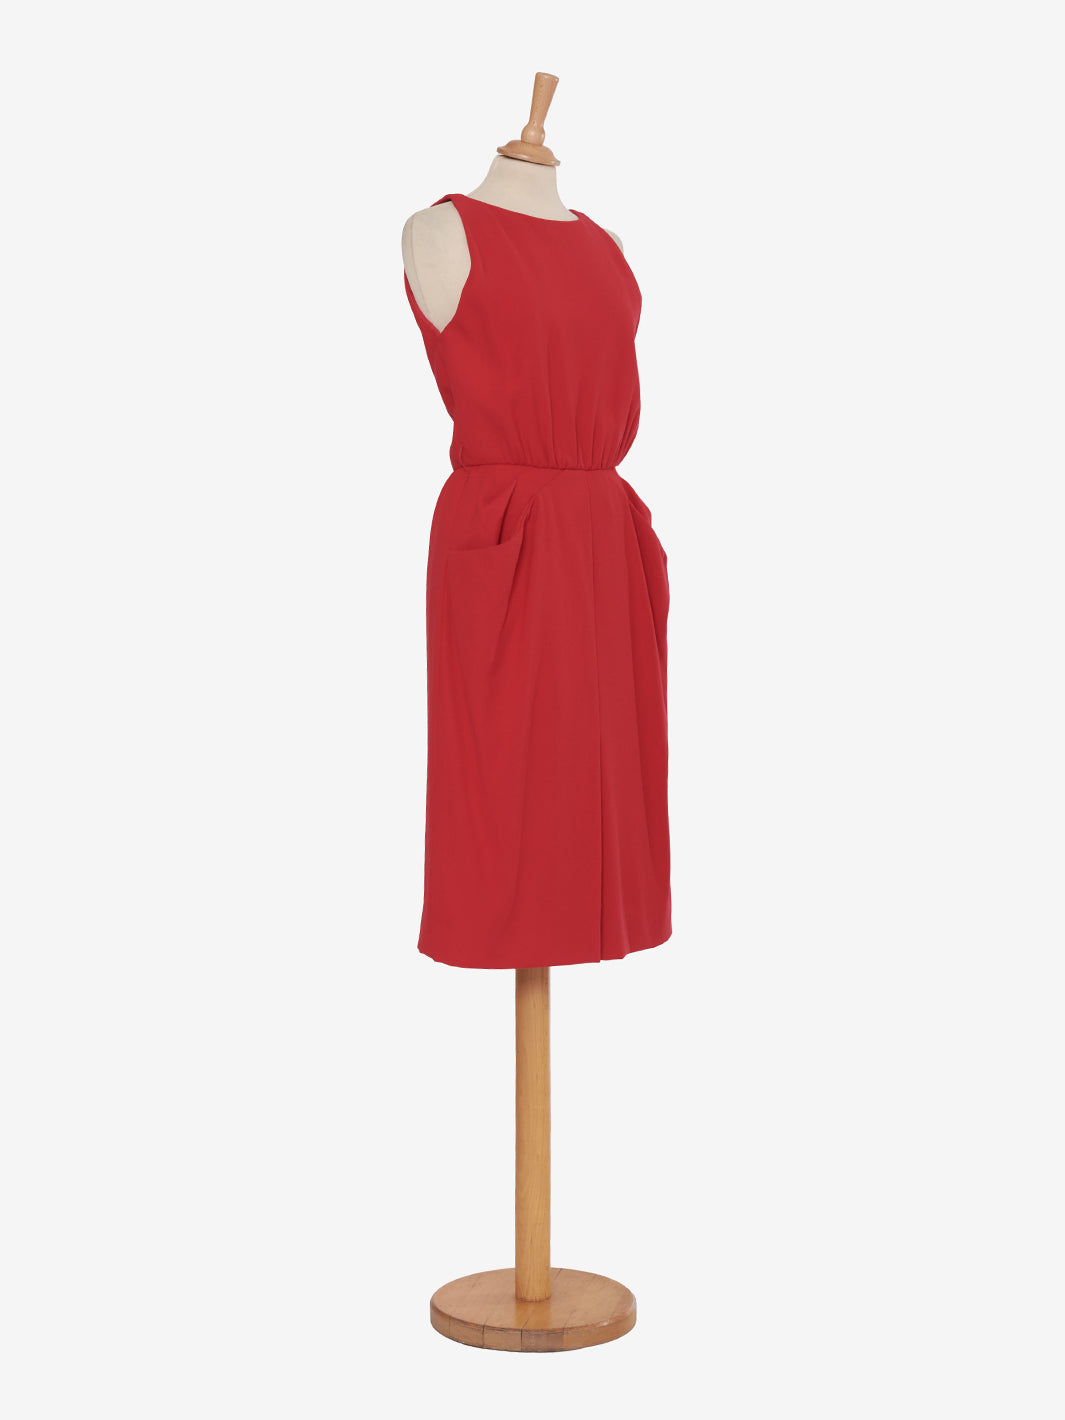 Carolyne Roehm sheath dress with sleeveless pockets - 90s